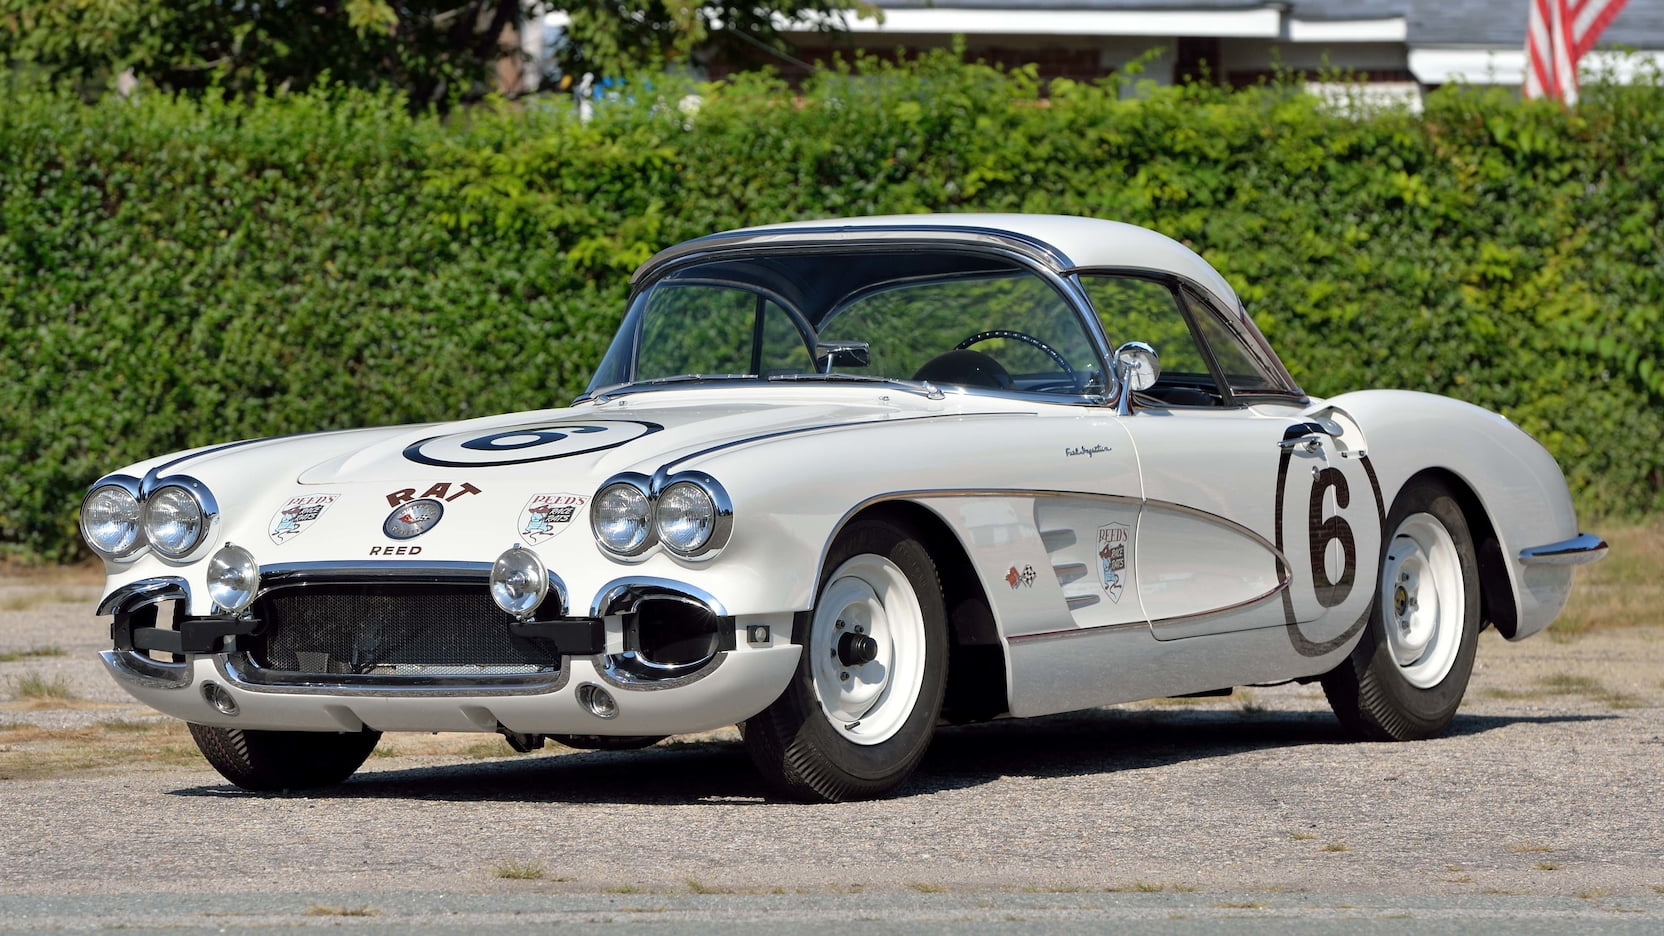 Corvette Of The Day: 1960 Chevrolet Corvette “Race Rat”